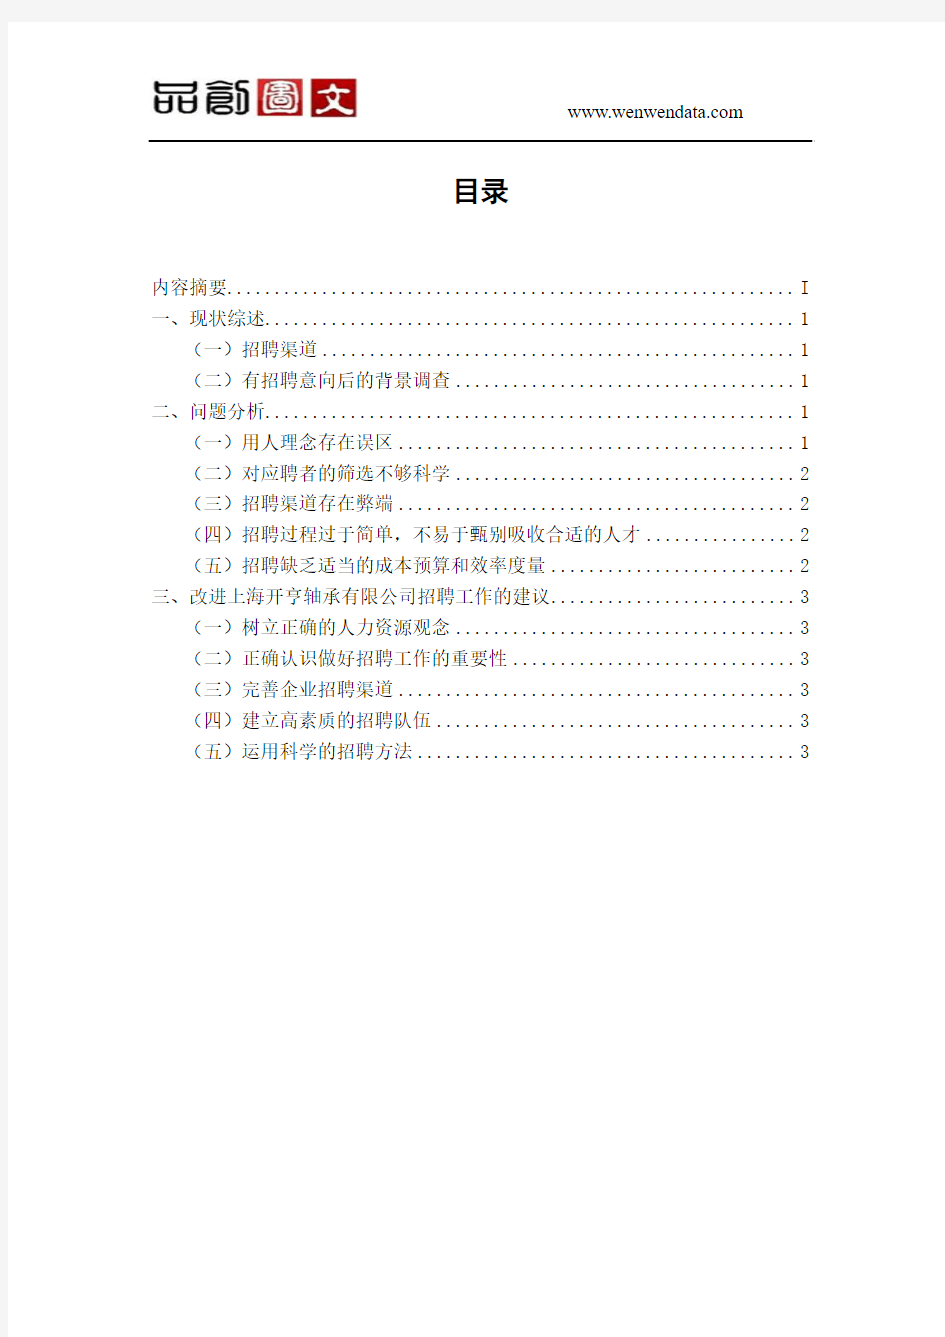 关于上海开亨轴承有限公司员工招聘工作的分析报告-业论文